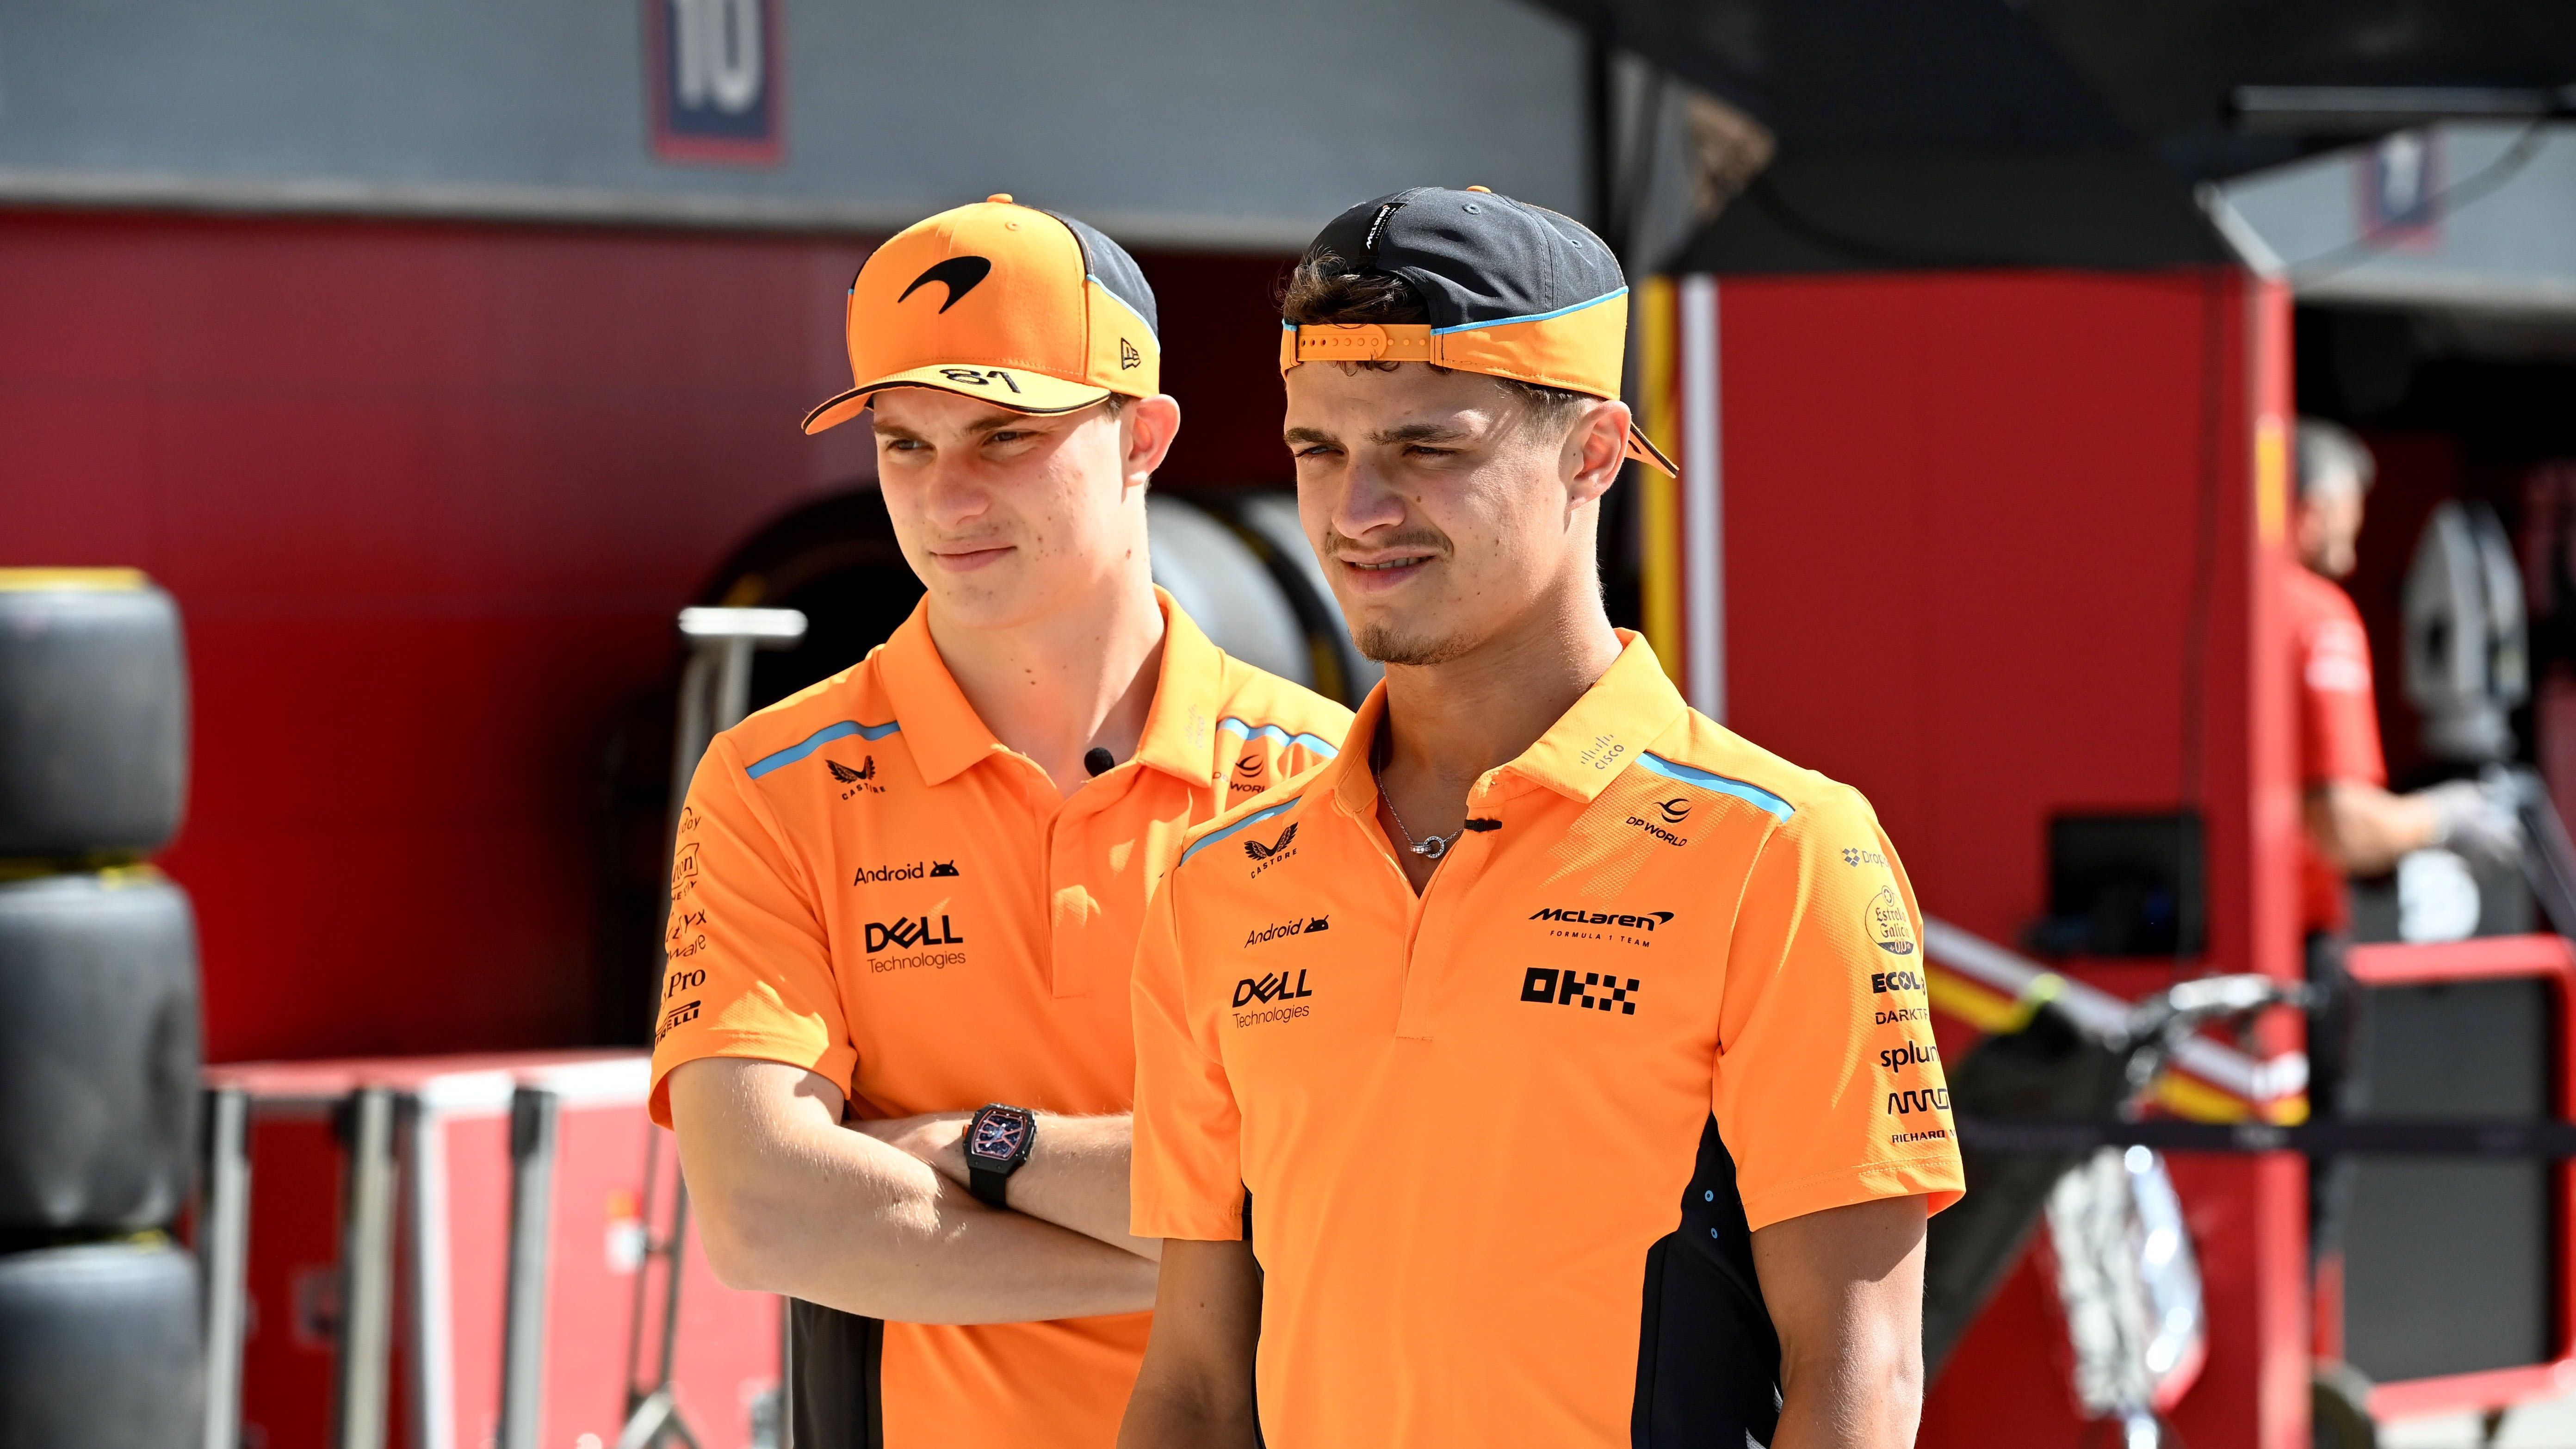 <strong>Piastri schlägt Norris im teaminternen Duell<br></strong>McLaren hat mit Lando Norris und Oscar Piastri eines der besten Fahrer-Duos der gesamten Formel 1, der junge Australier Piastri heizte dem arrivierten Briten bereits in der Vorsaison mächtig ein. In diesem Jahr gibt es die Wachablösung, Piastri steigt zur Nummer eins im Team auf.